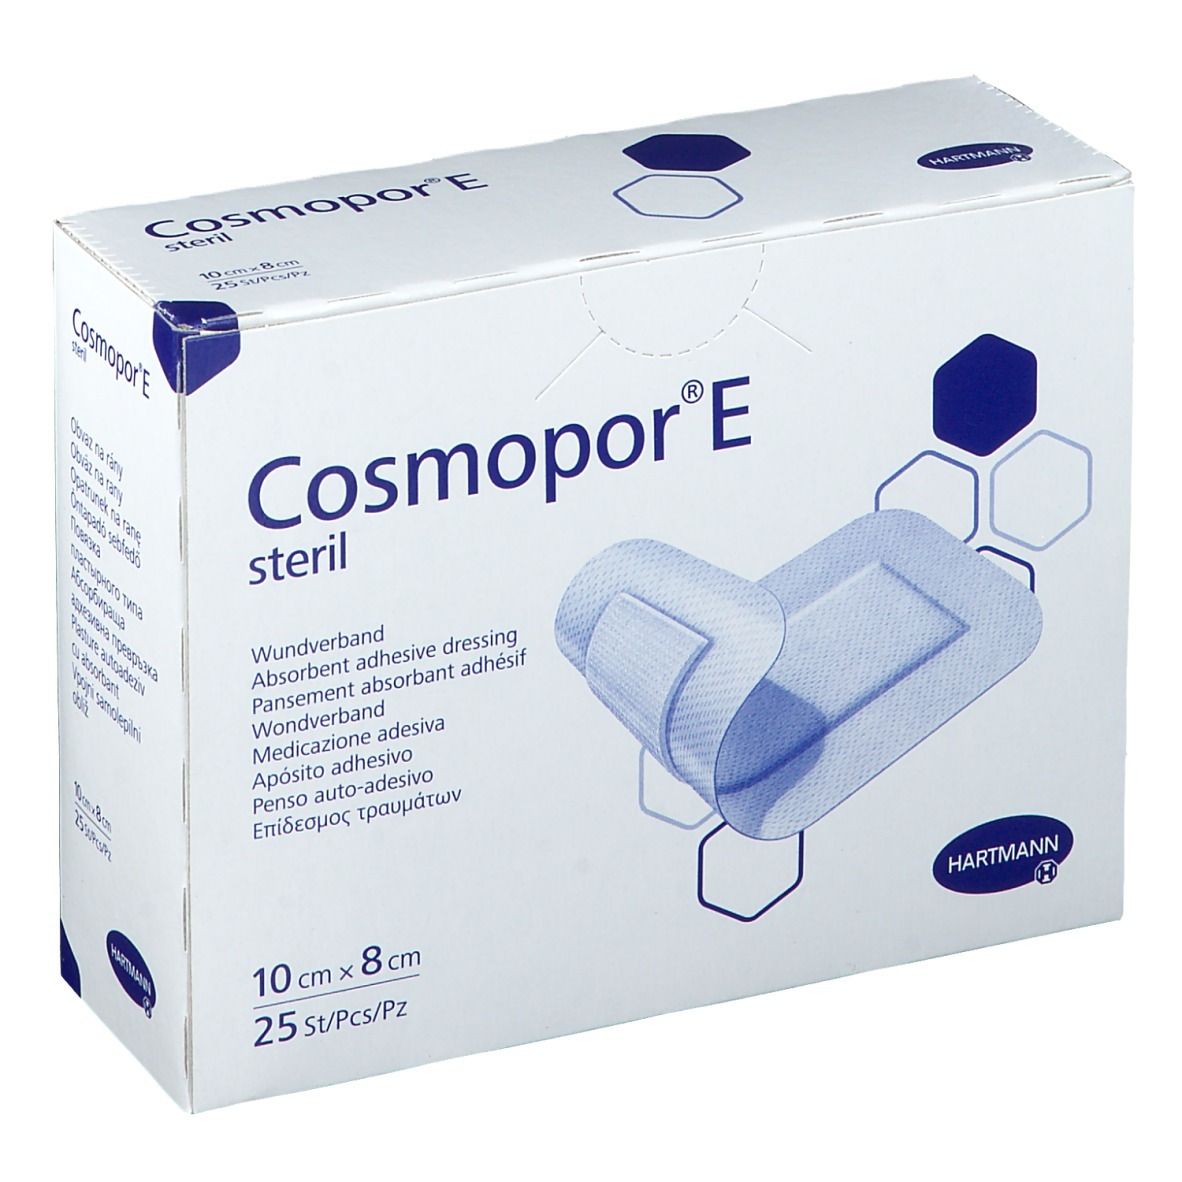 Cosmopor® E stéril 10 cm x 8 cm